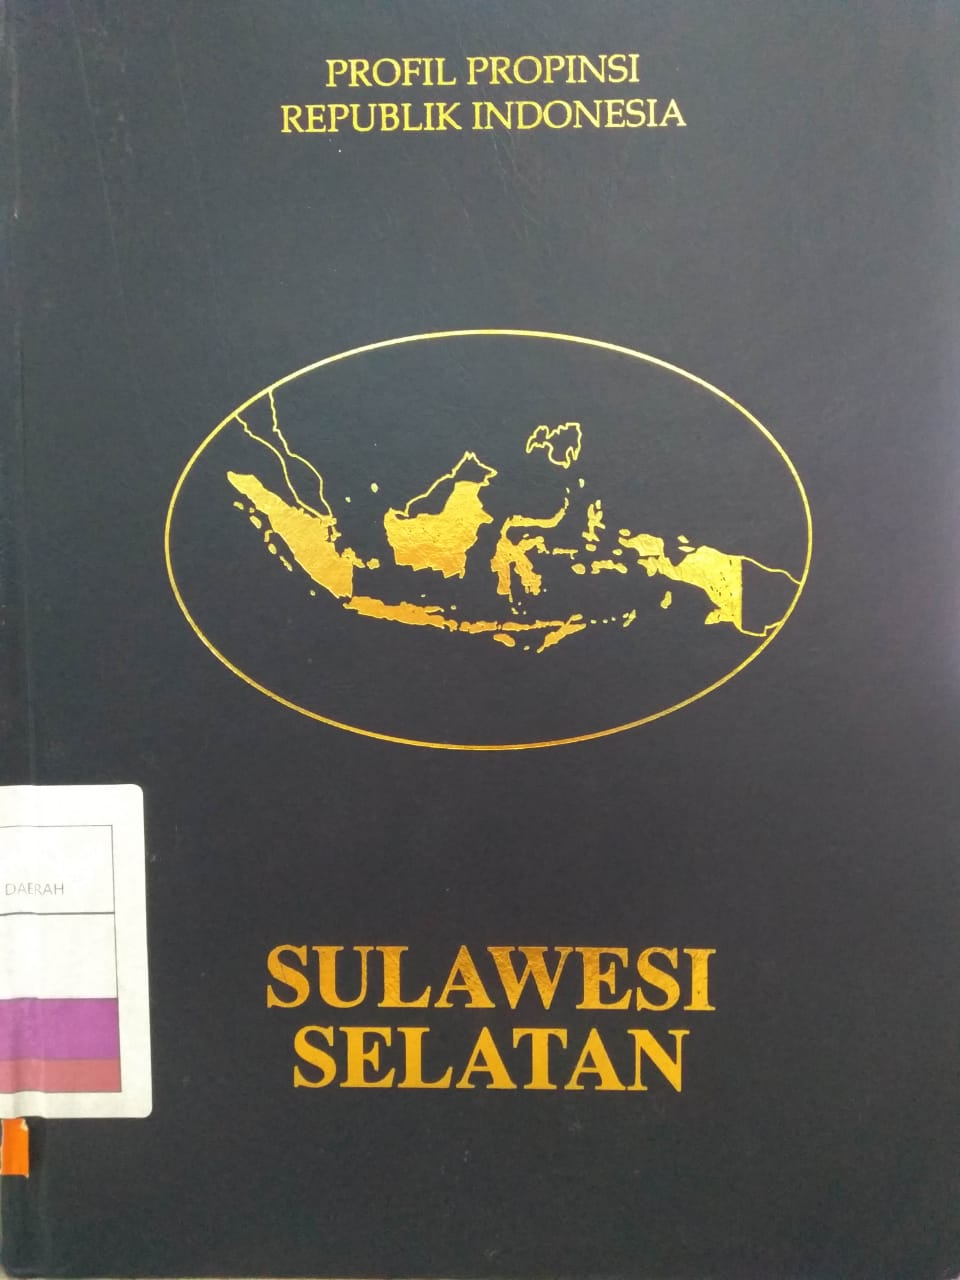 Buku Profil Propinsi Republik Indonesia : Sulawesi Selatan